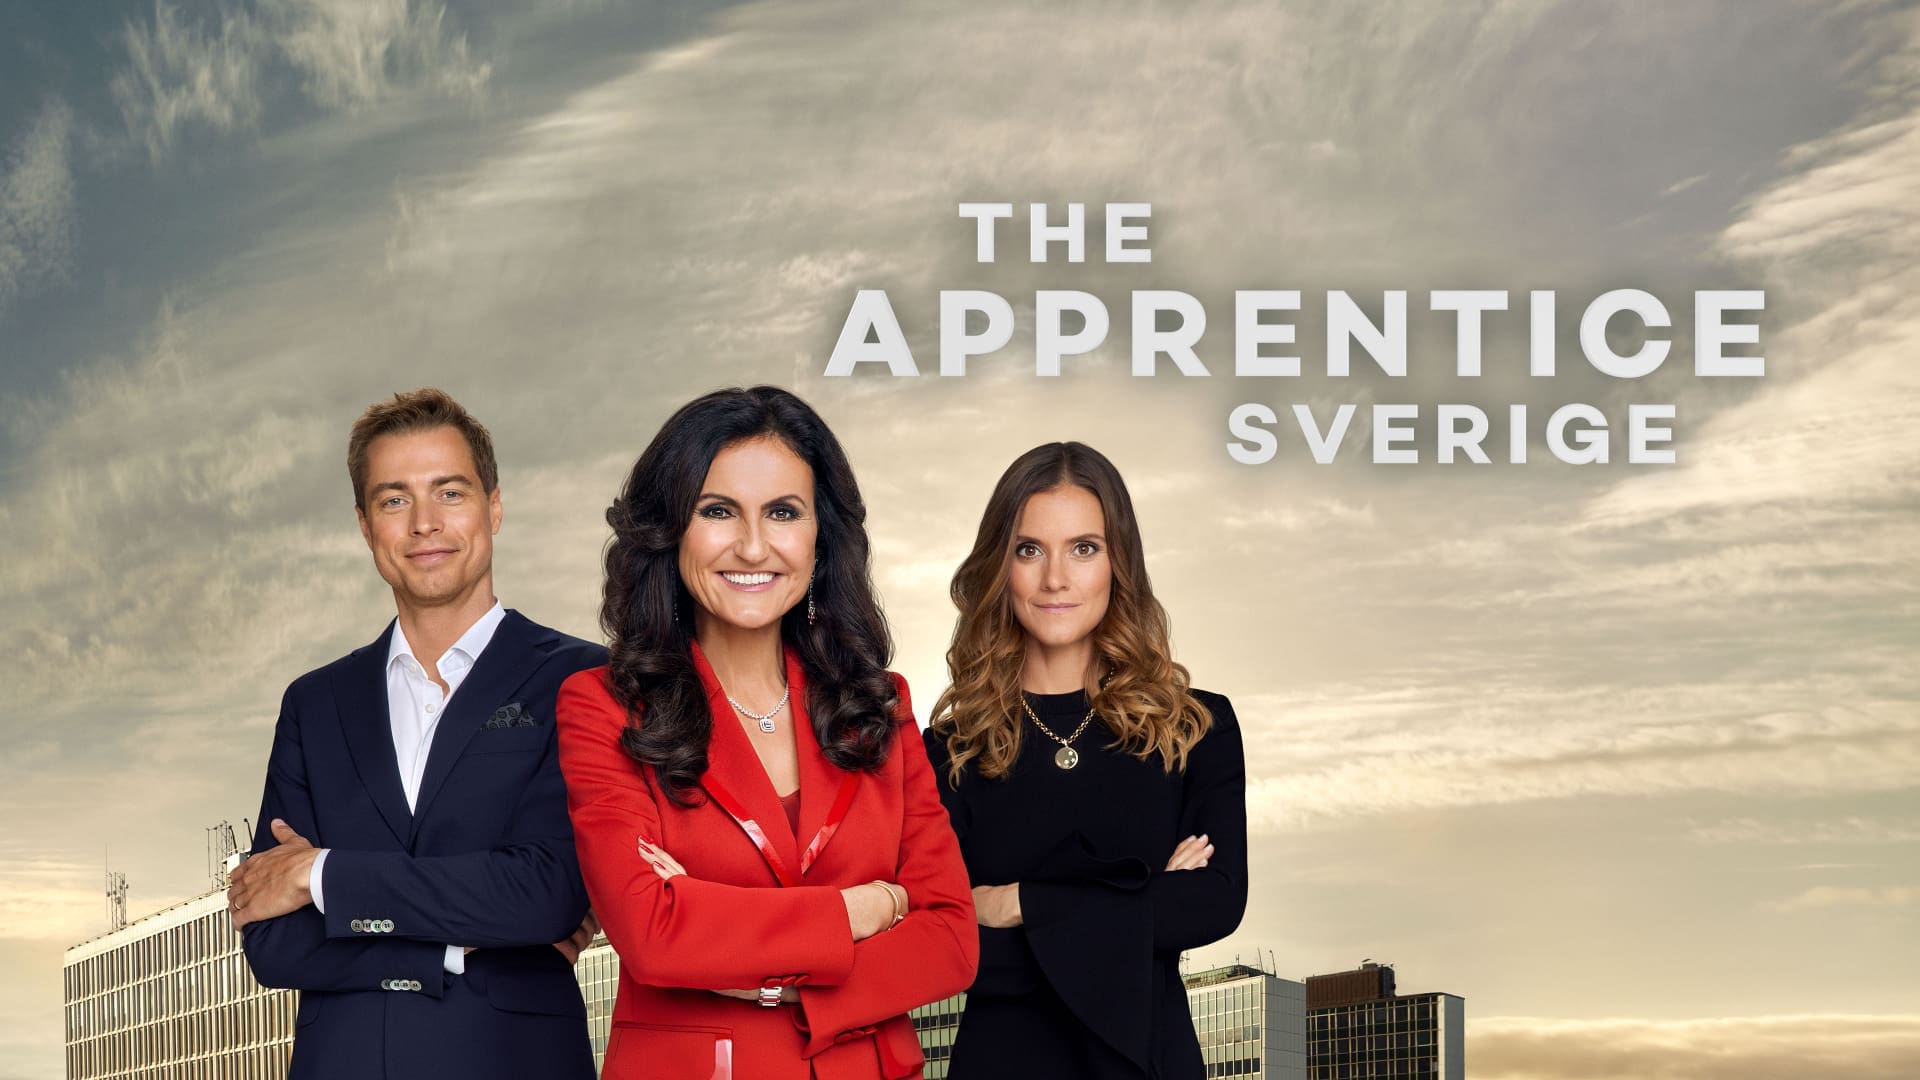 The Apprentice Sverige poster